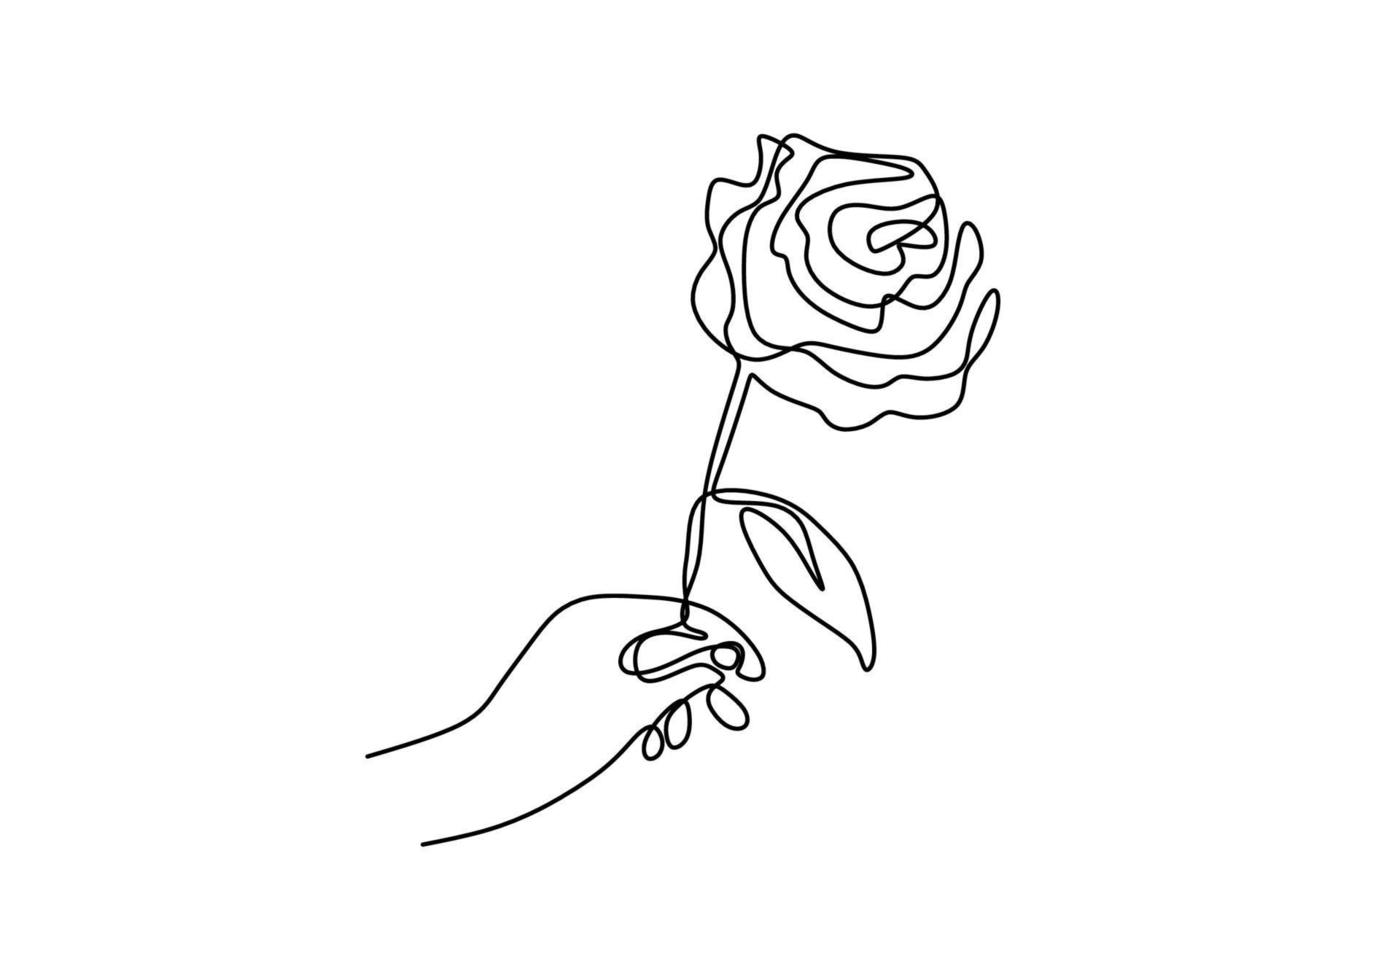 doorlopende lijntekening van een hand met roze bloem. hand vrouw met een bloem geïsoleerd op een witte achtergrond. geef een teken van liefde voor iemand. minimalistische stijl. vector schets illustratie